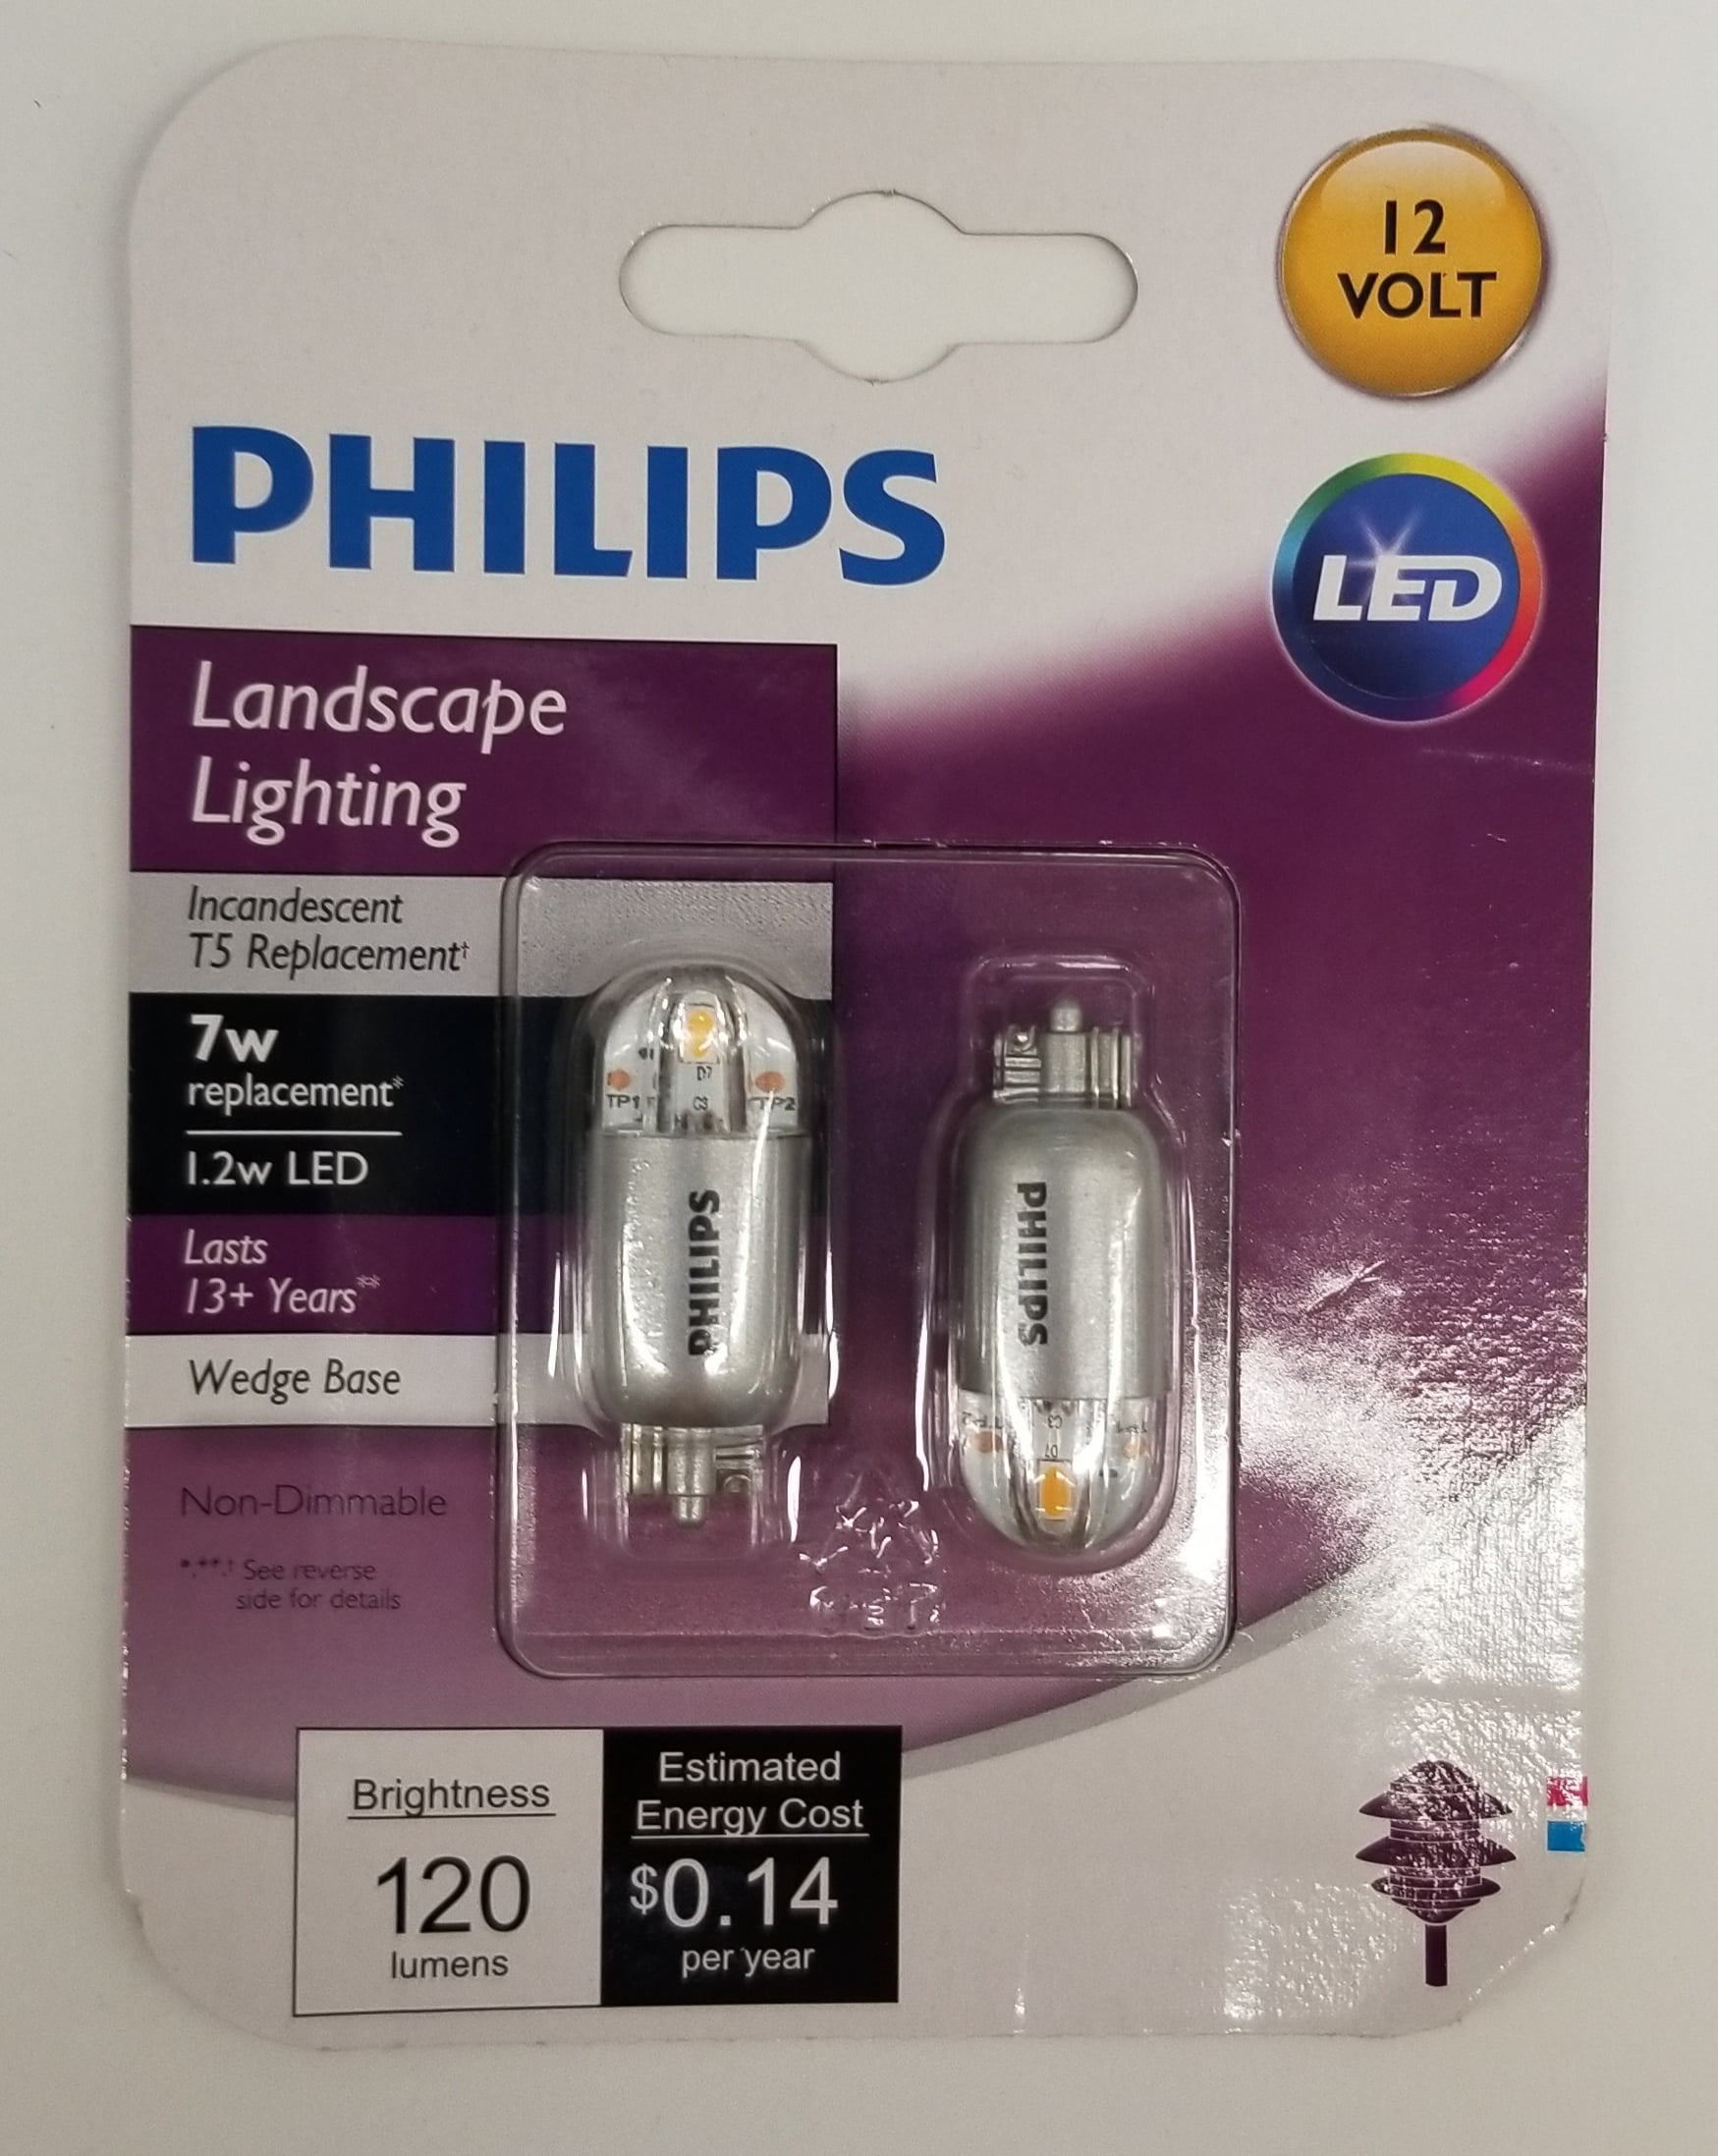 Phillips Led 7 Watt Light Bulb T5 Plc, Philips Led Landscape Bulbs